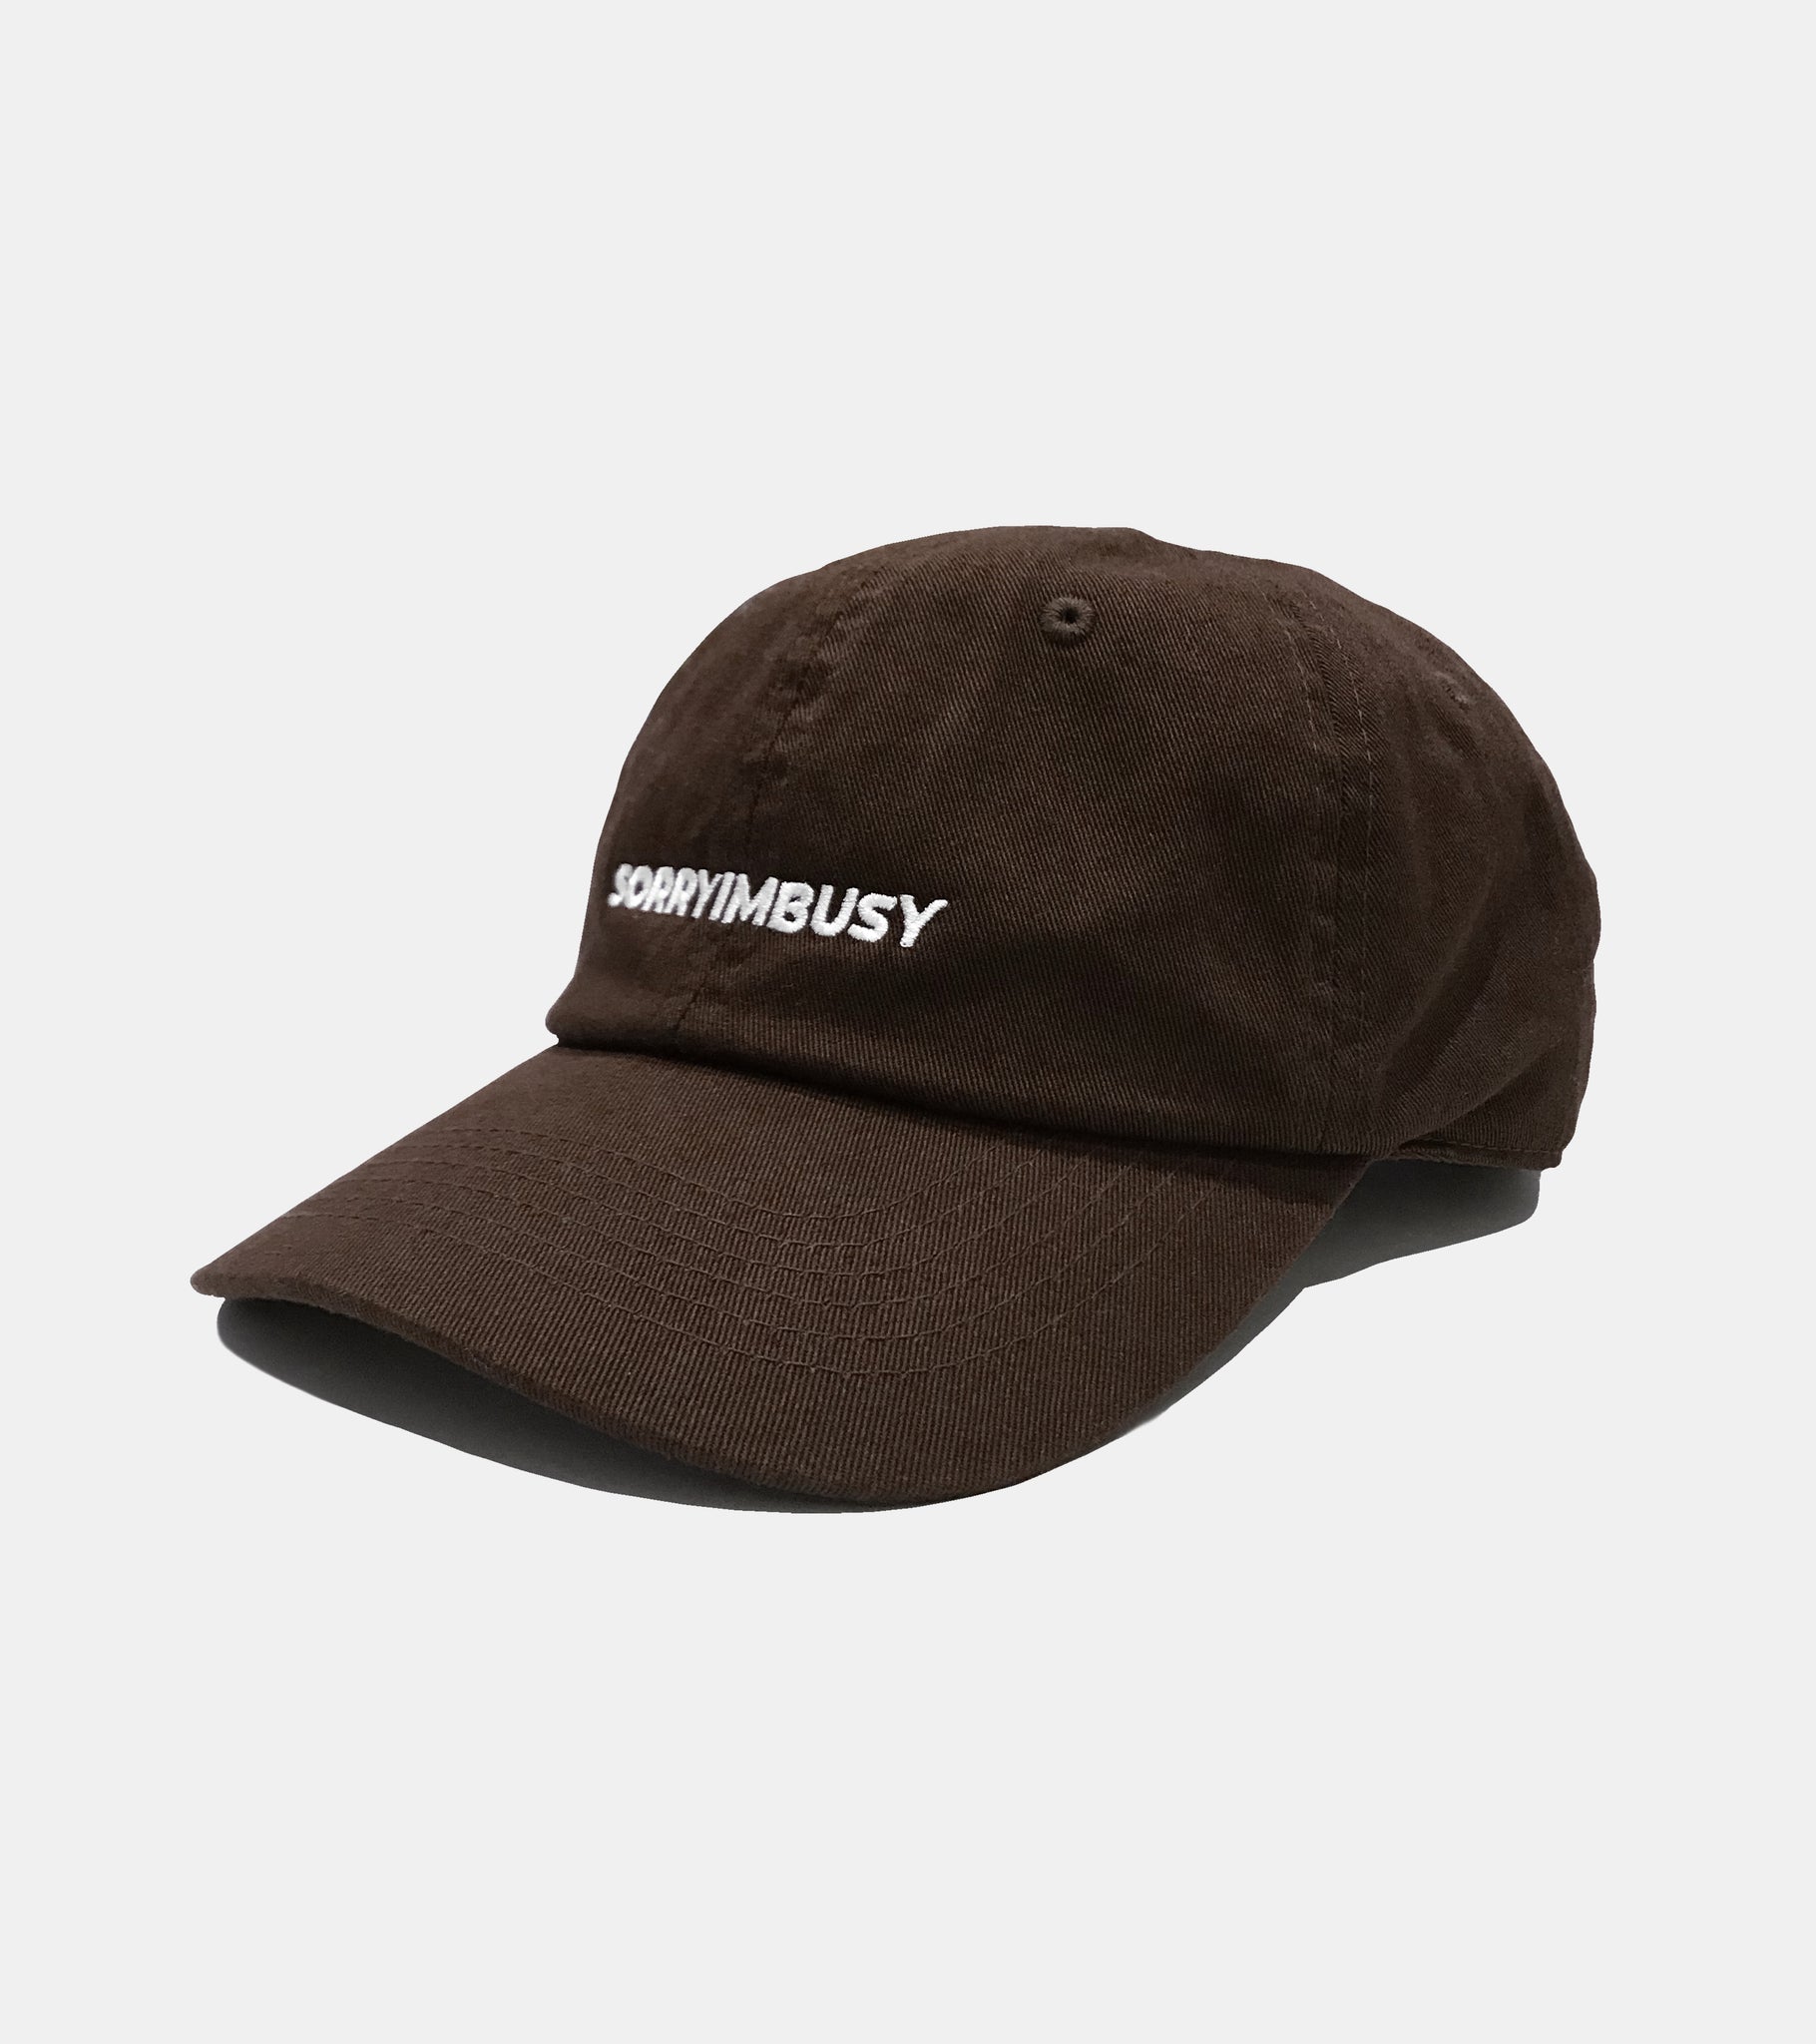 SORRYIMBUSY CLASSIC LOGO CAP BROWN